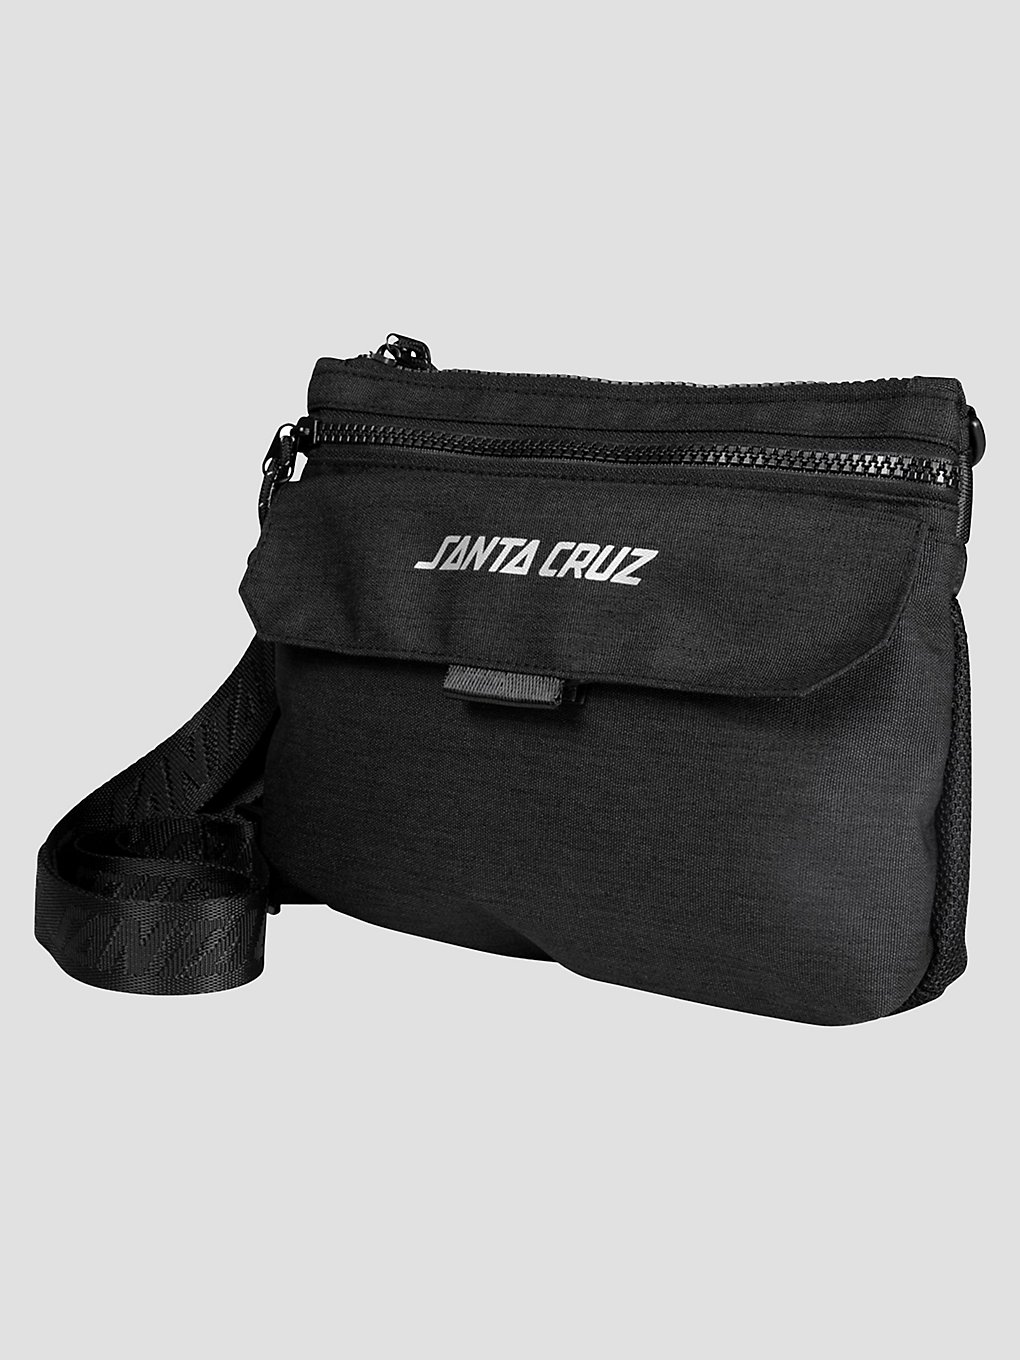 Santa Cruz Tito Side Handtasche black kaufen